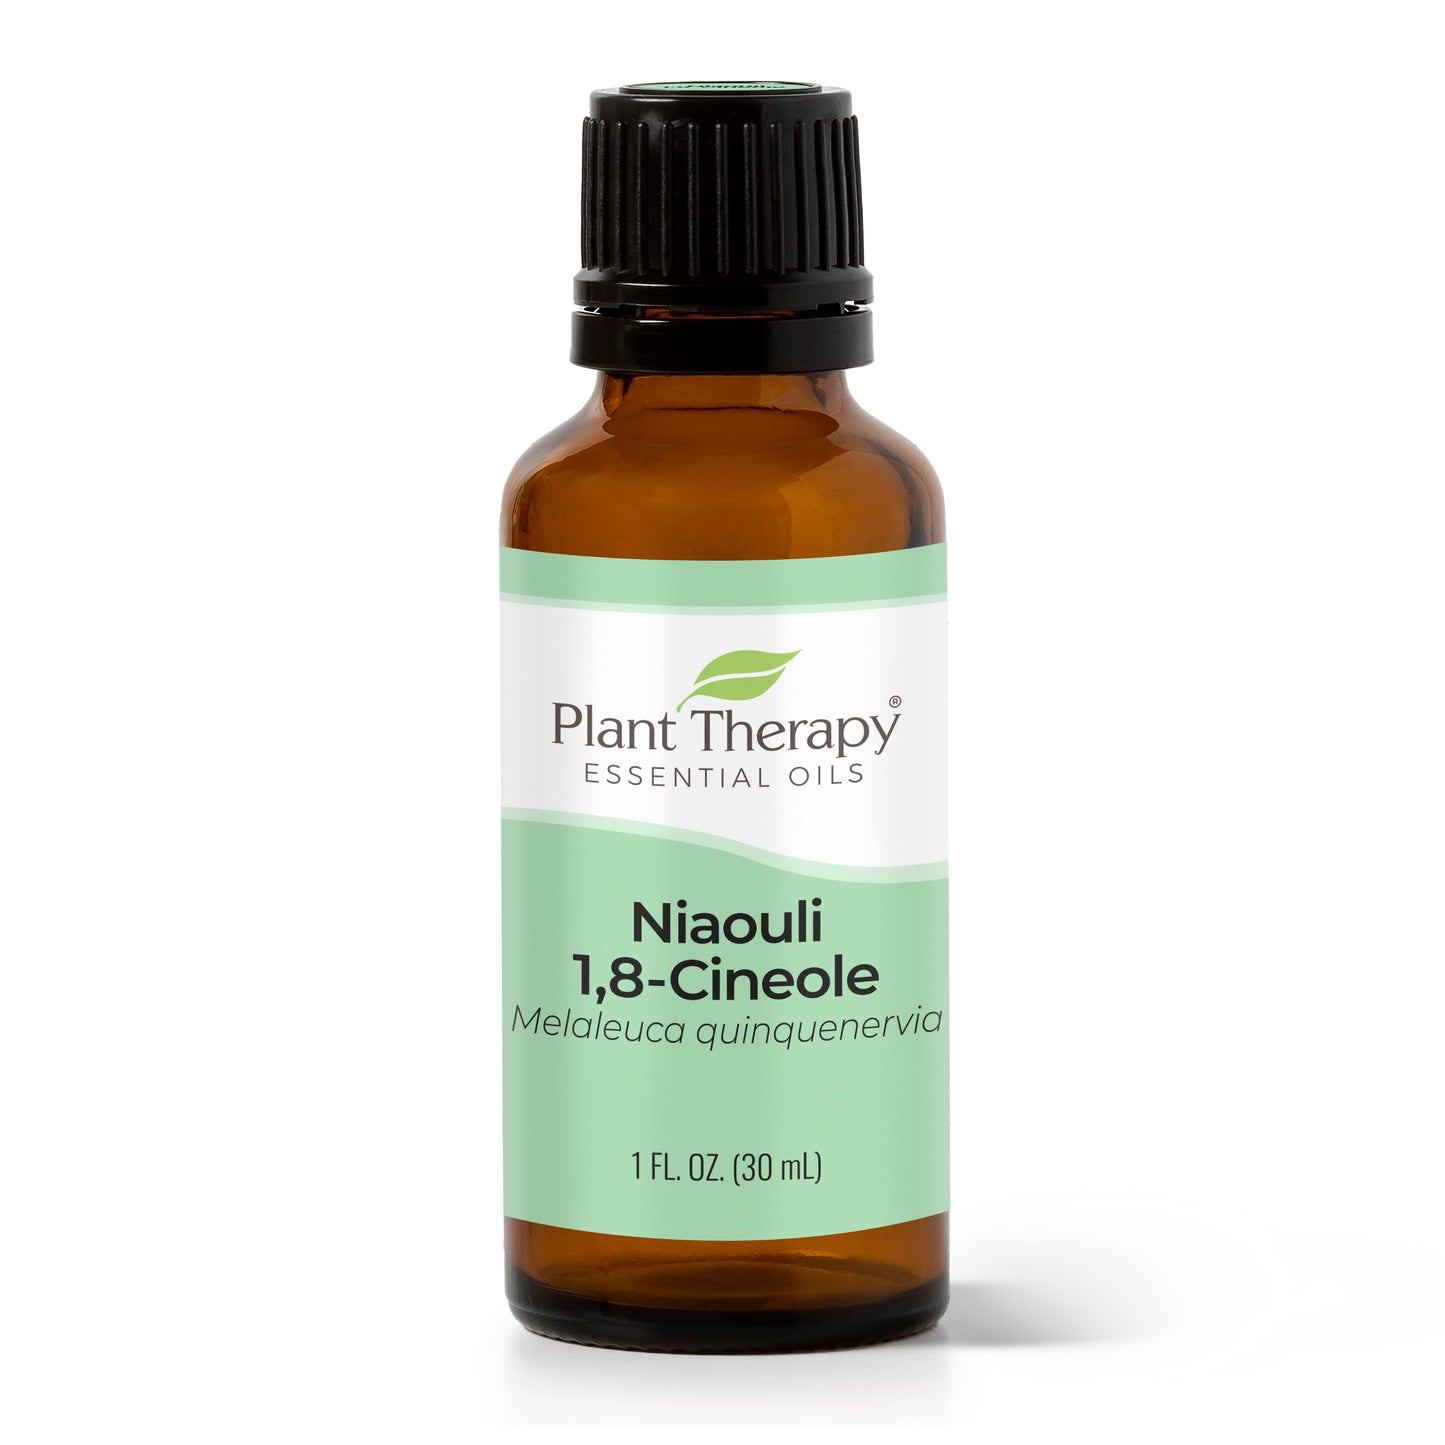 Niaouli 1,8-Cineole Essential Oil